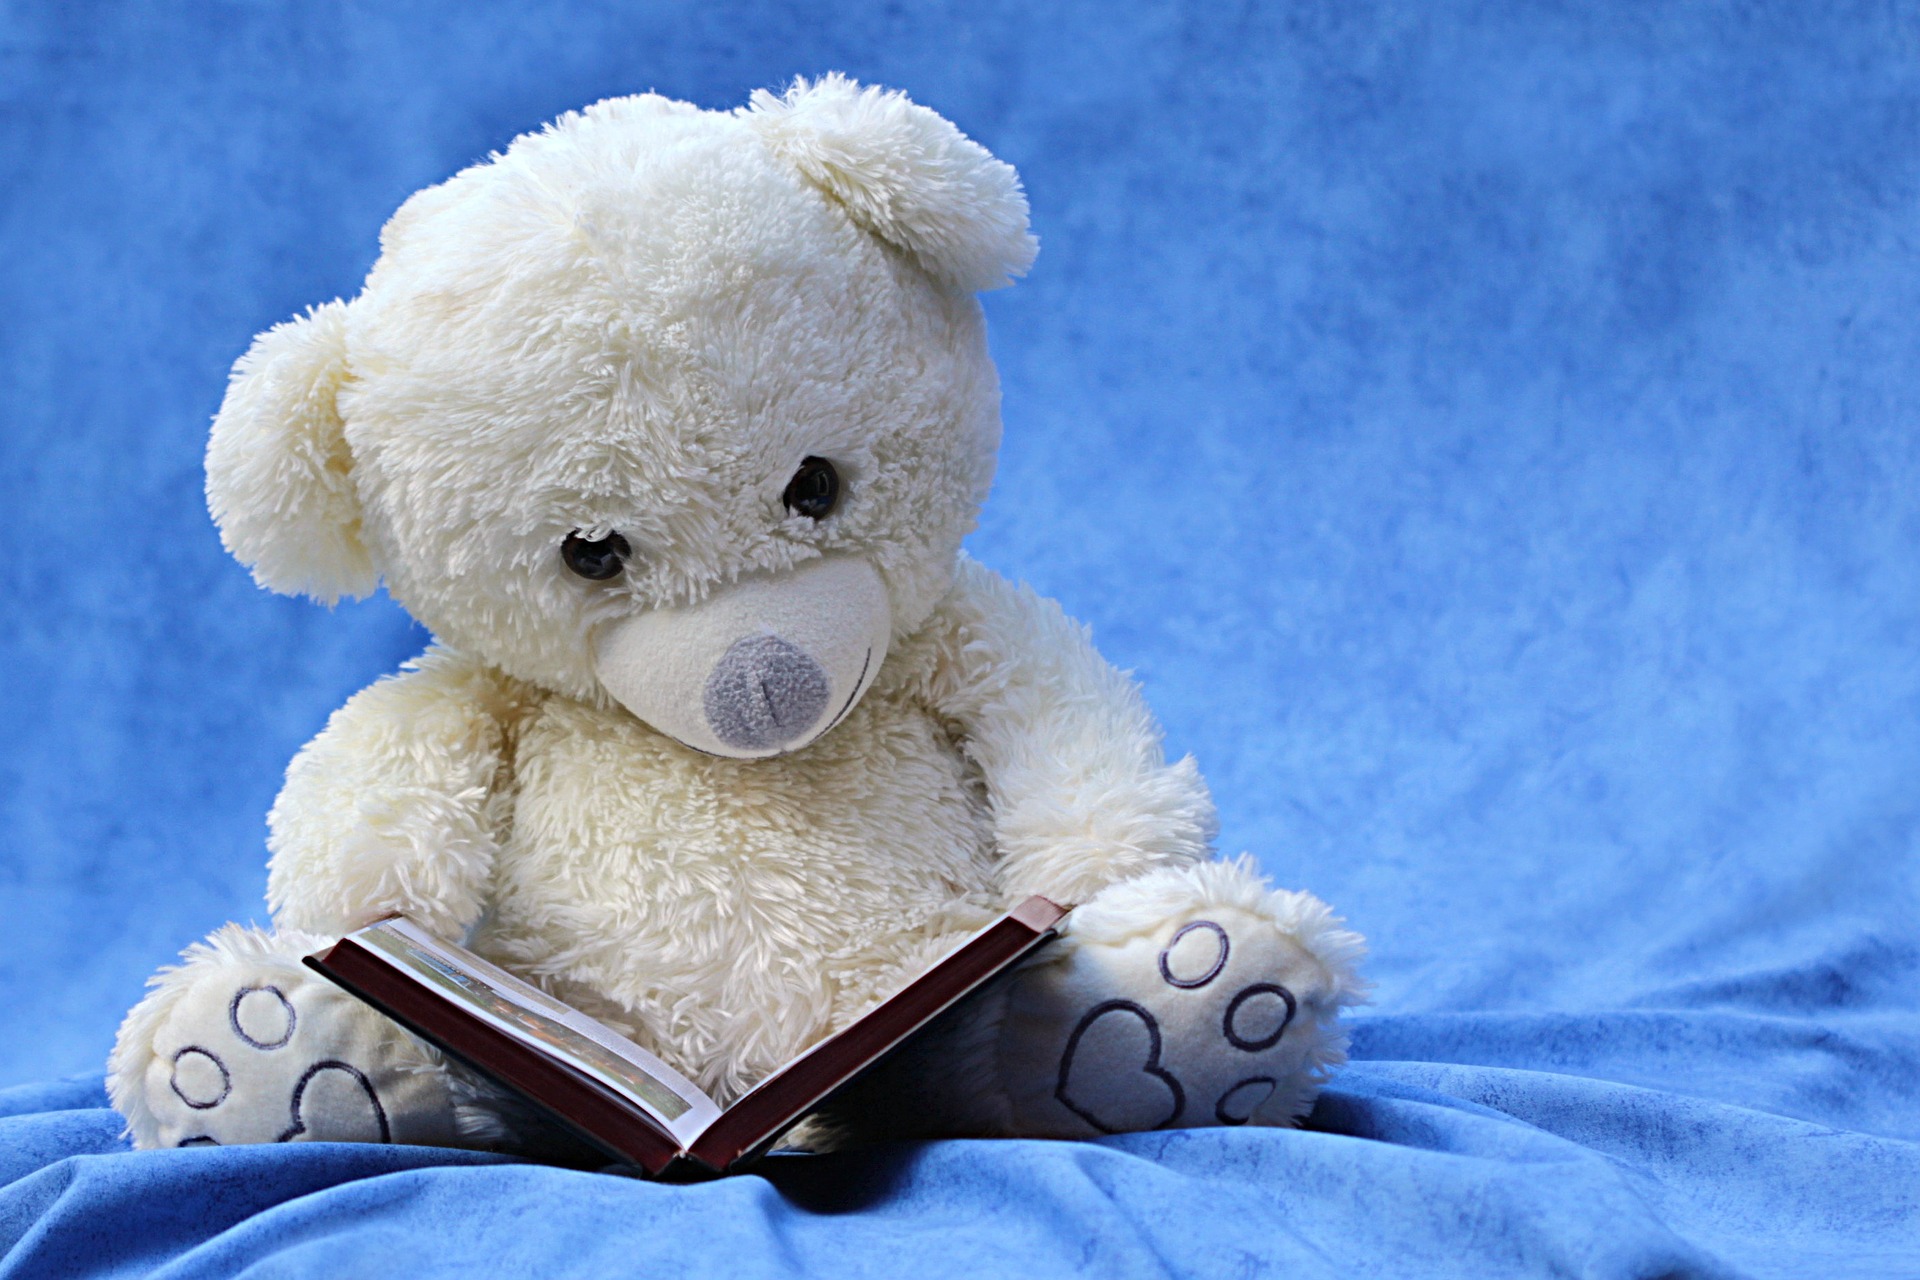 download wallpaper: teddybeer leest een boek wallpaper